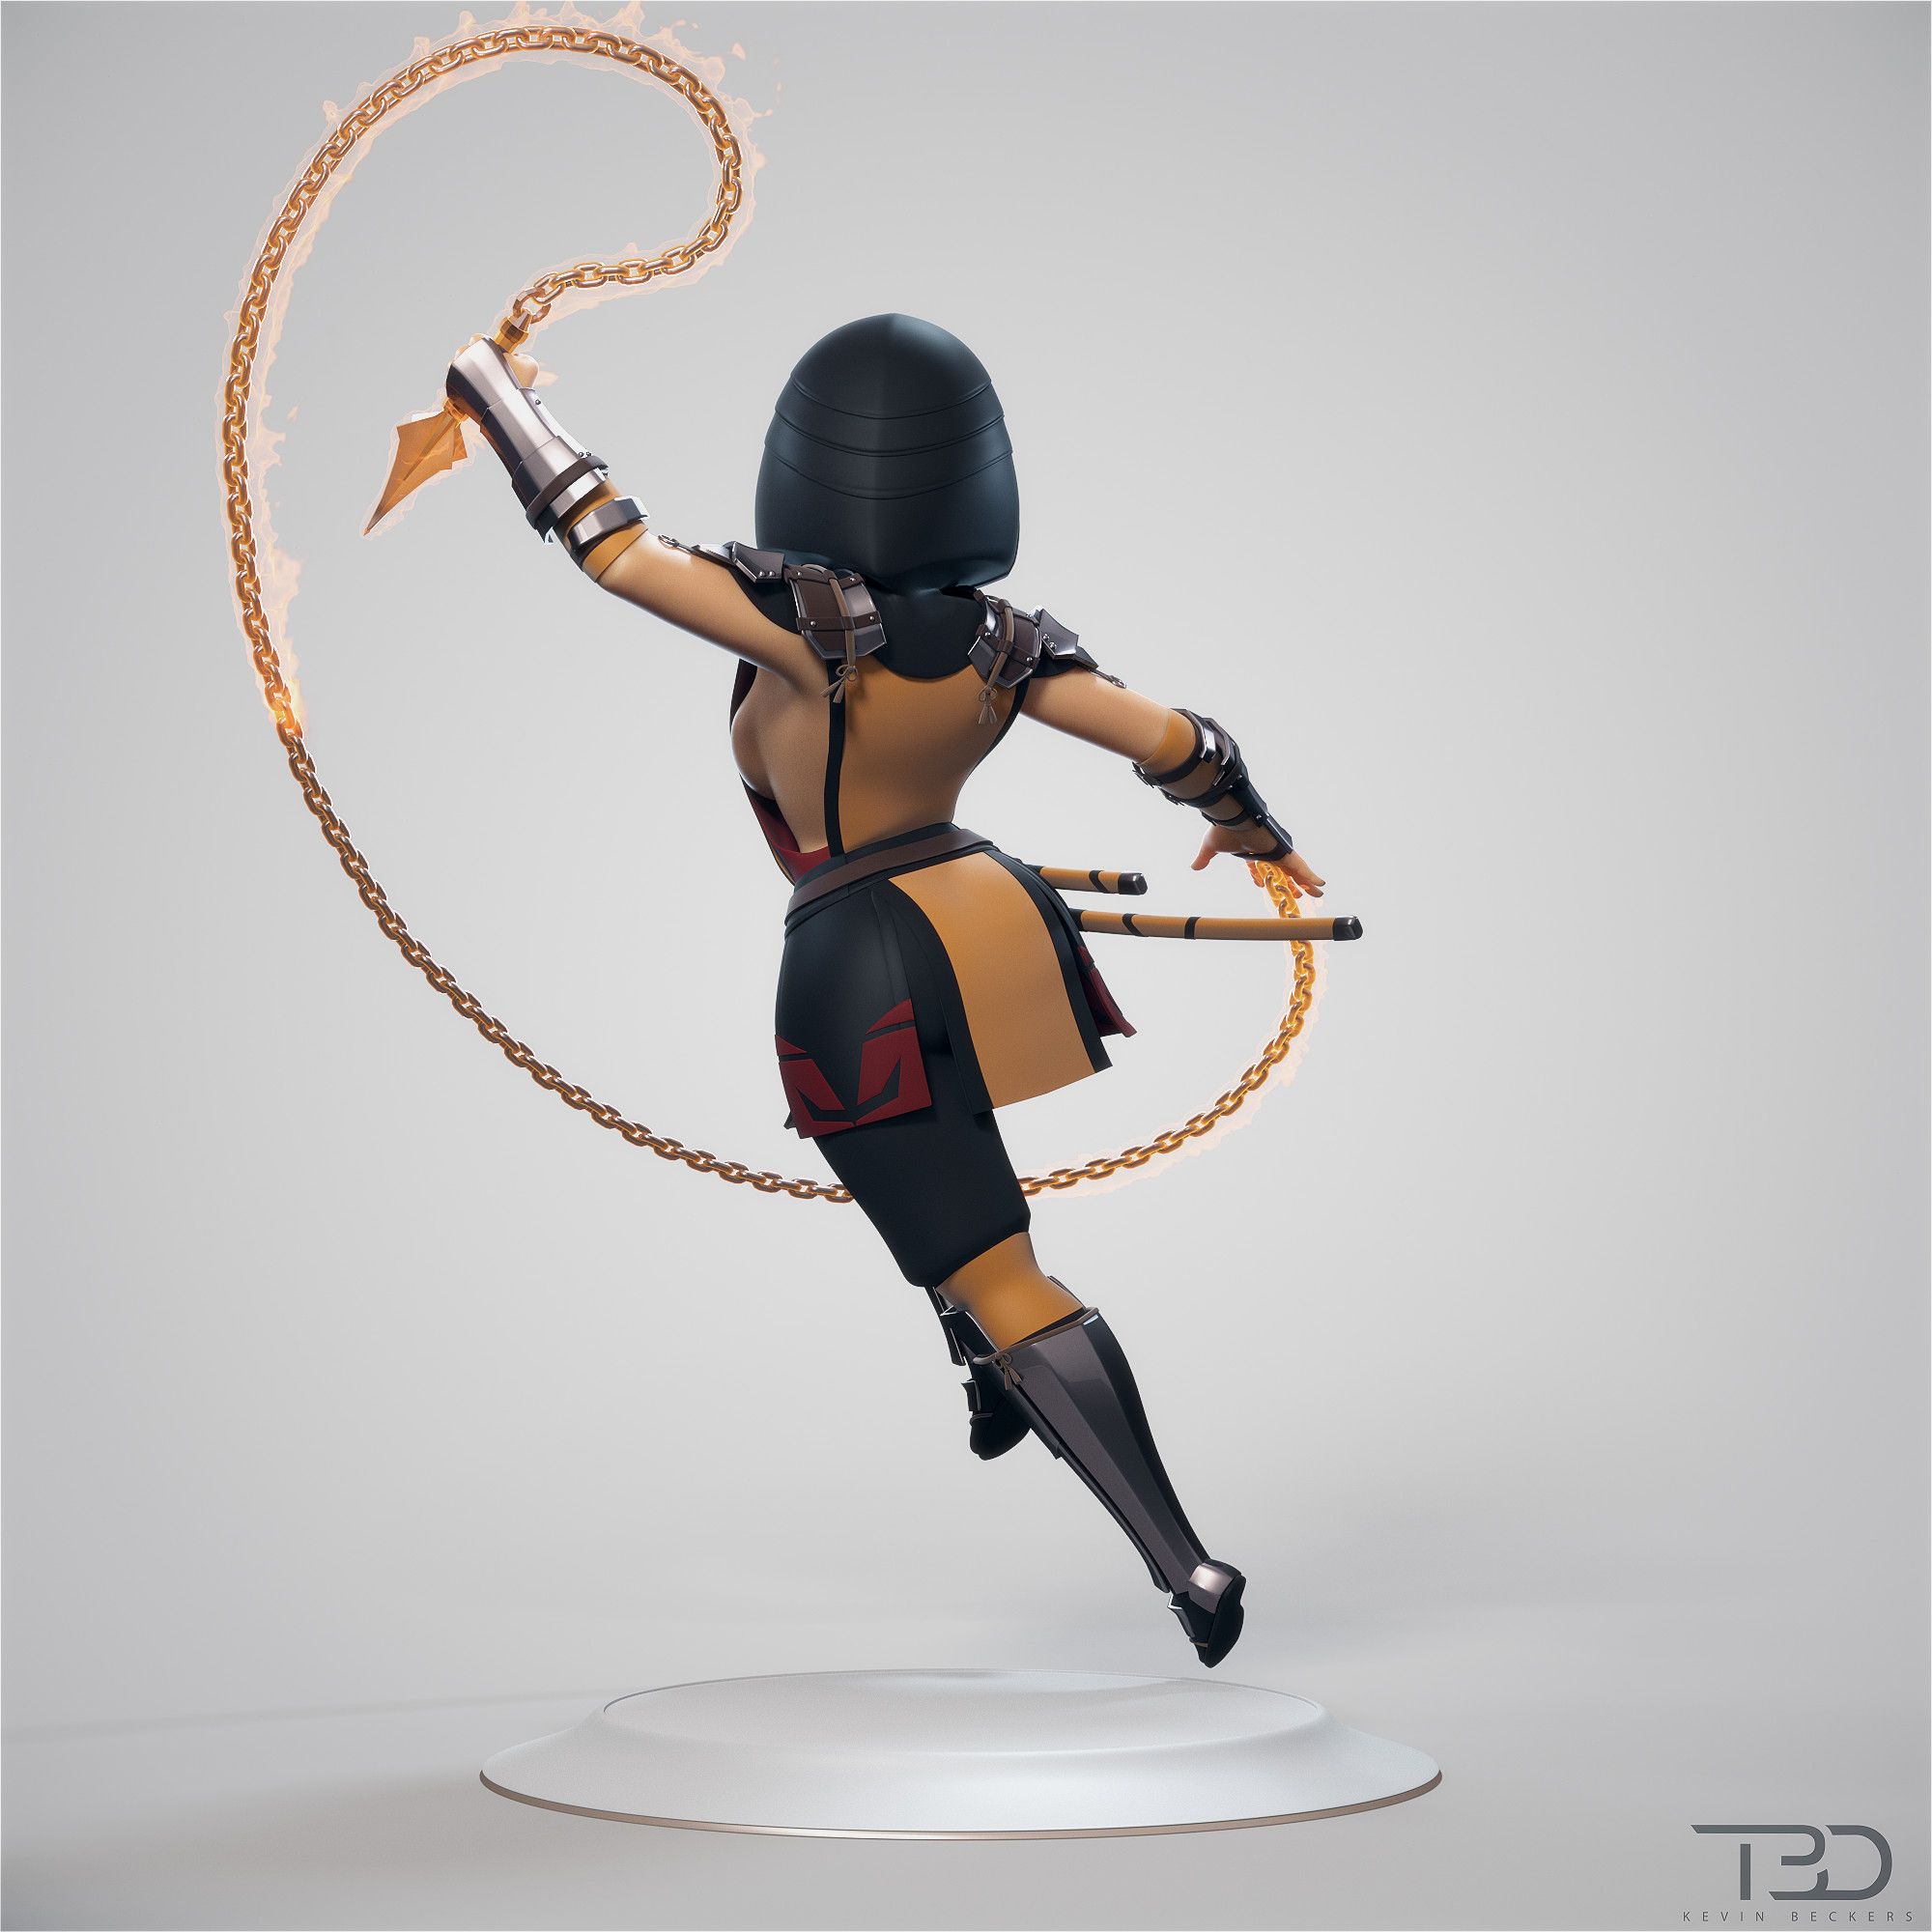 Скорпион из Mortal Kombat — женская модель. Автор: Кевин Беккерс. Источник: artstation.com